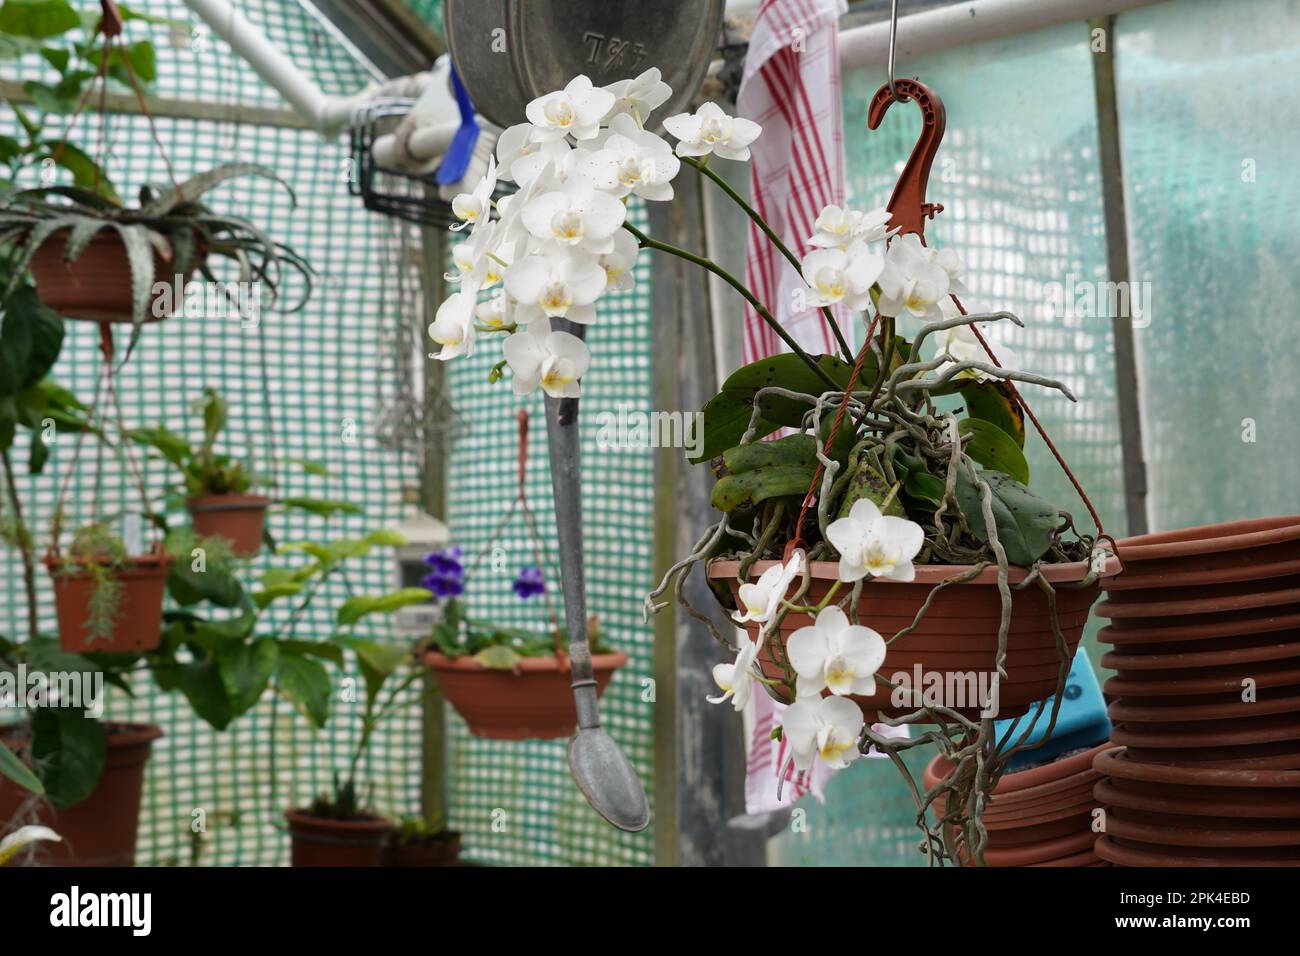 Plante d'orchidée avec des fleurs blanches dans un pot en plastique qui est suspendu dans une serre. Sur le fond défoqué, il y a des plantes exotiques cultivées. Banque D'Images